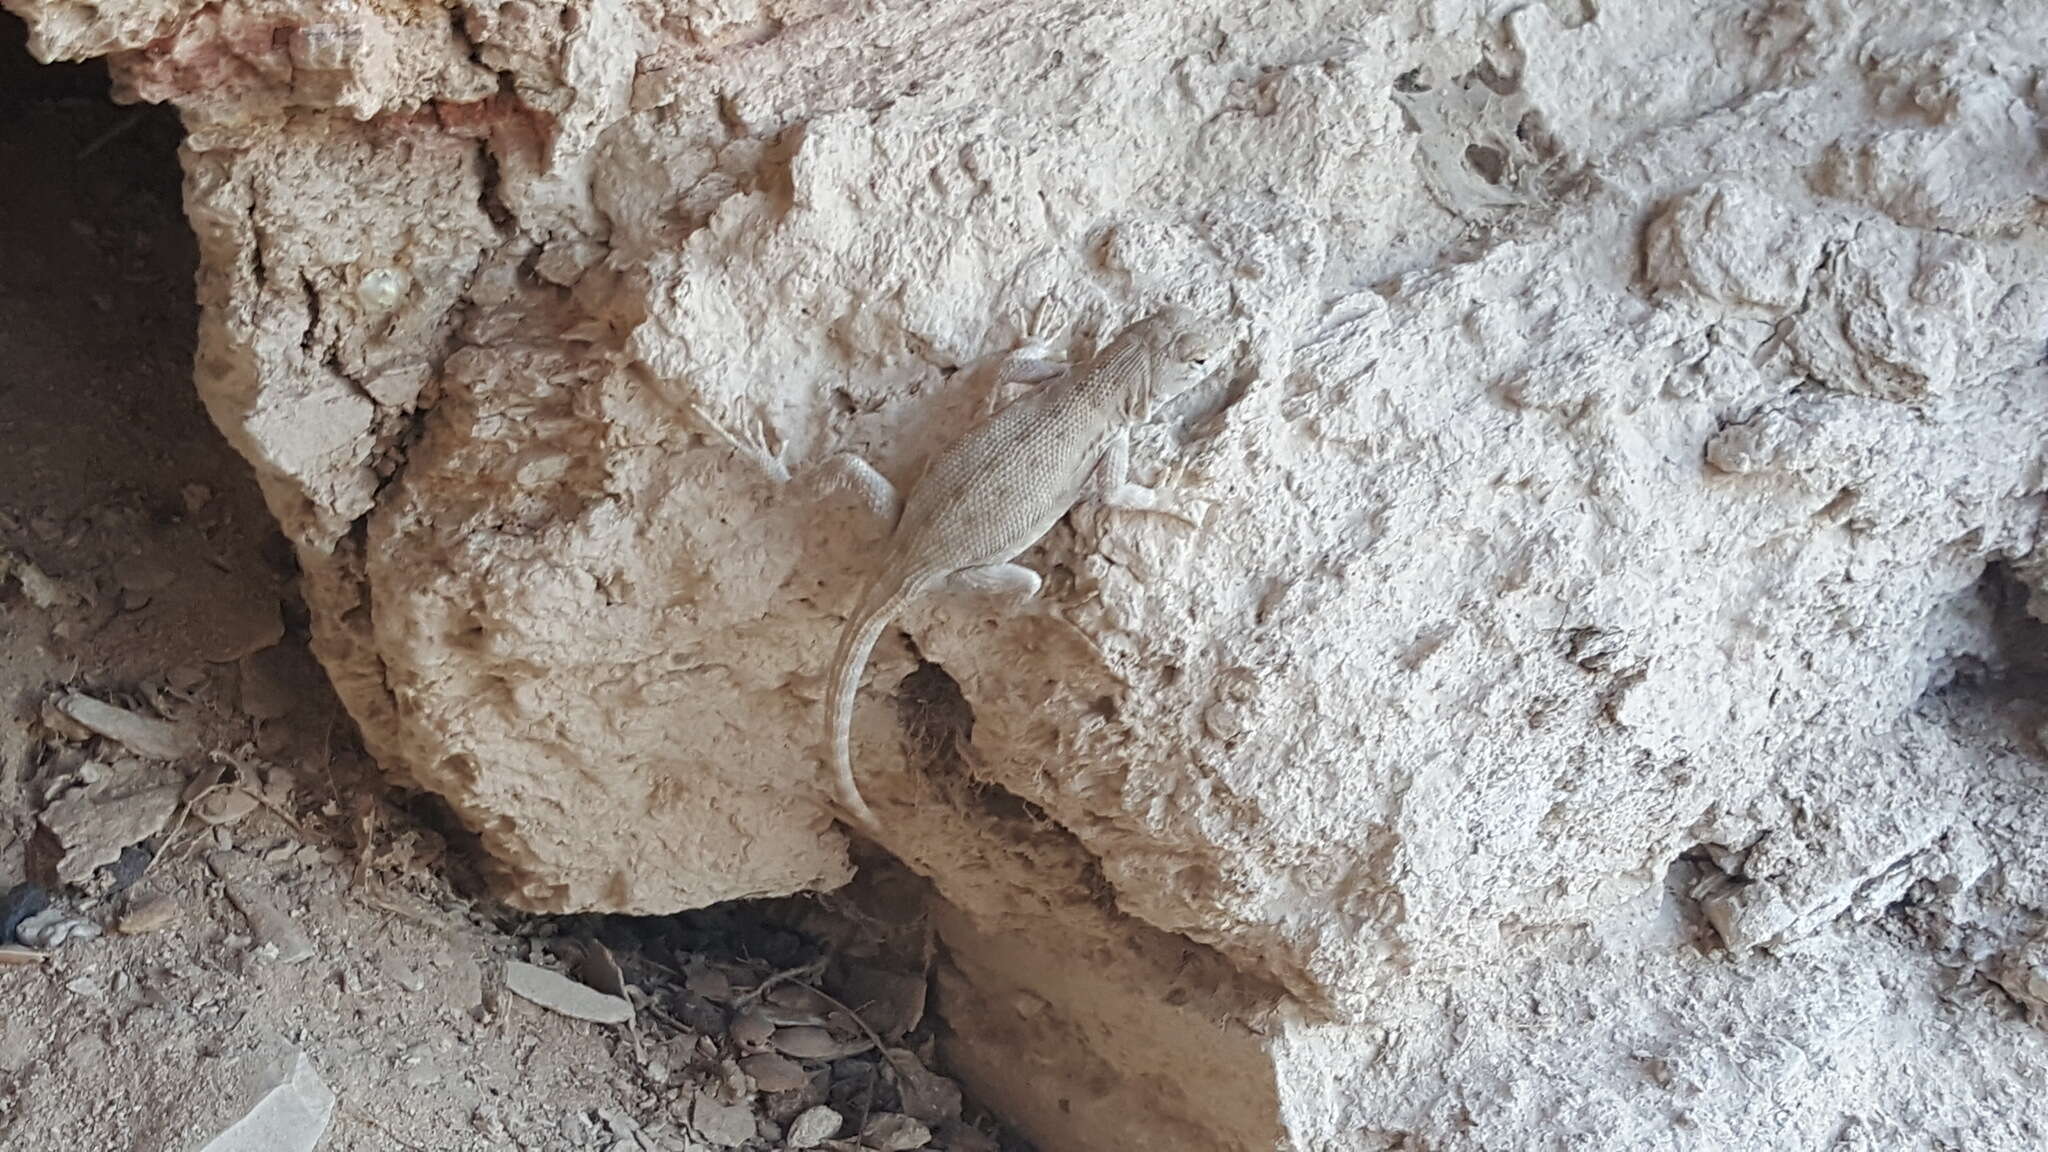 Image of Canyon Lizard